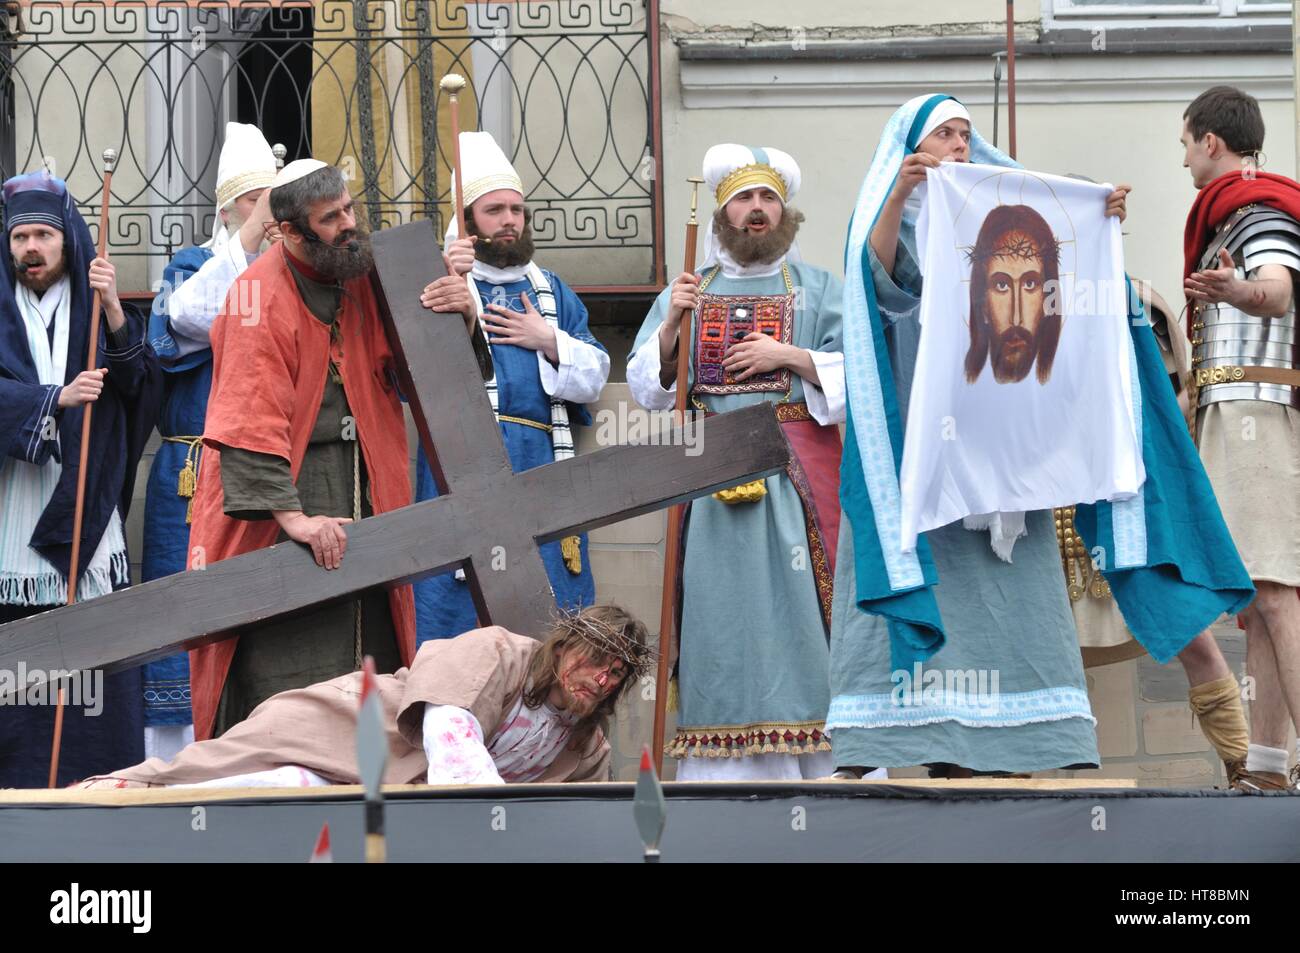 Veronica tenendo un panno che porta l'immagine del volto di Cristo, durante gli spettacoli di strada mistero della passione. Foto Stock